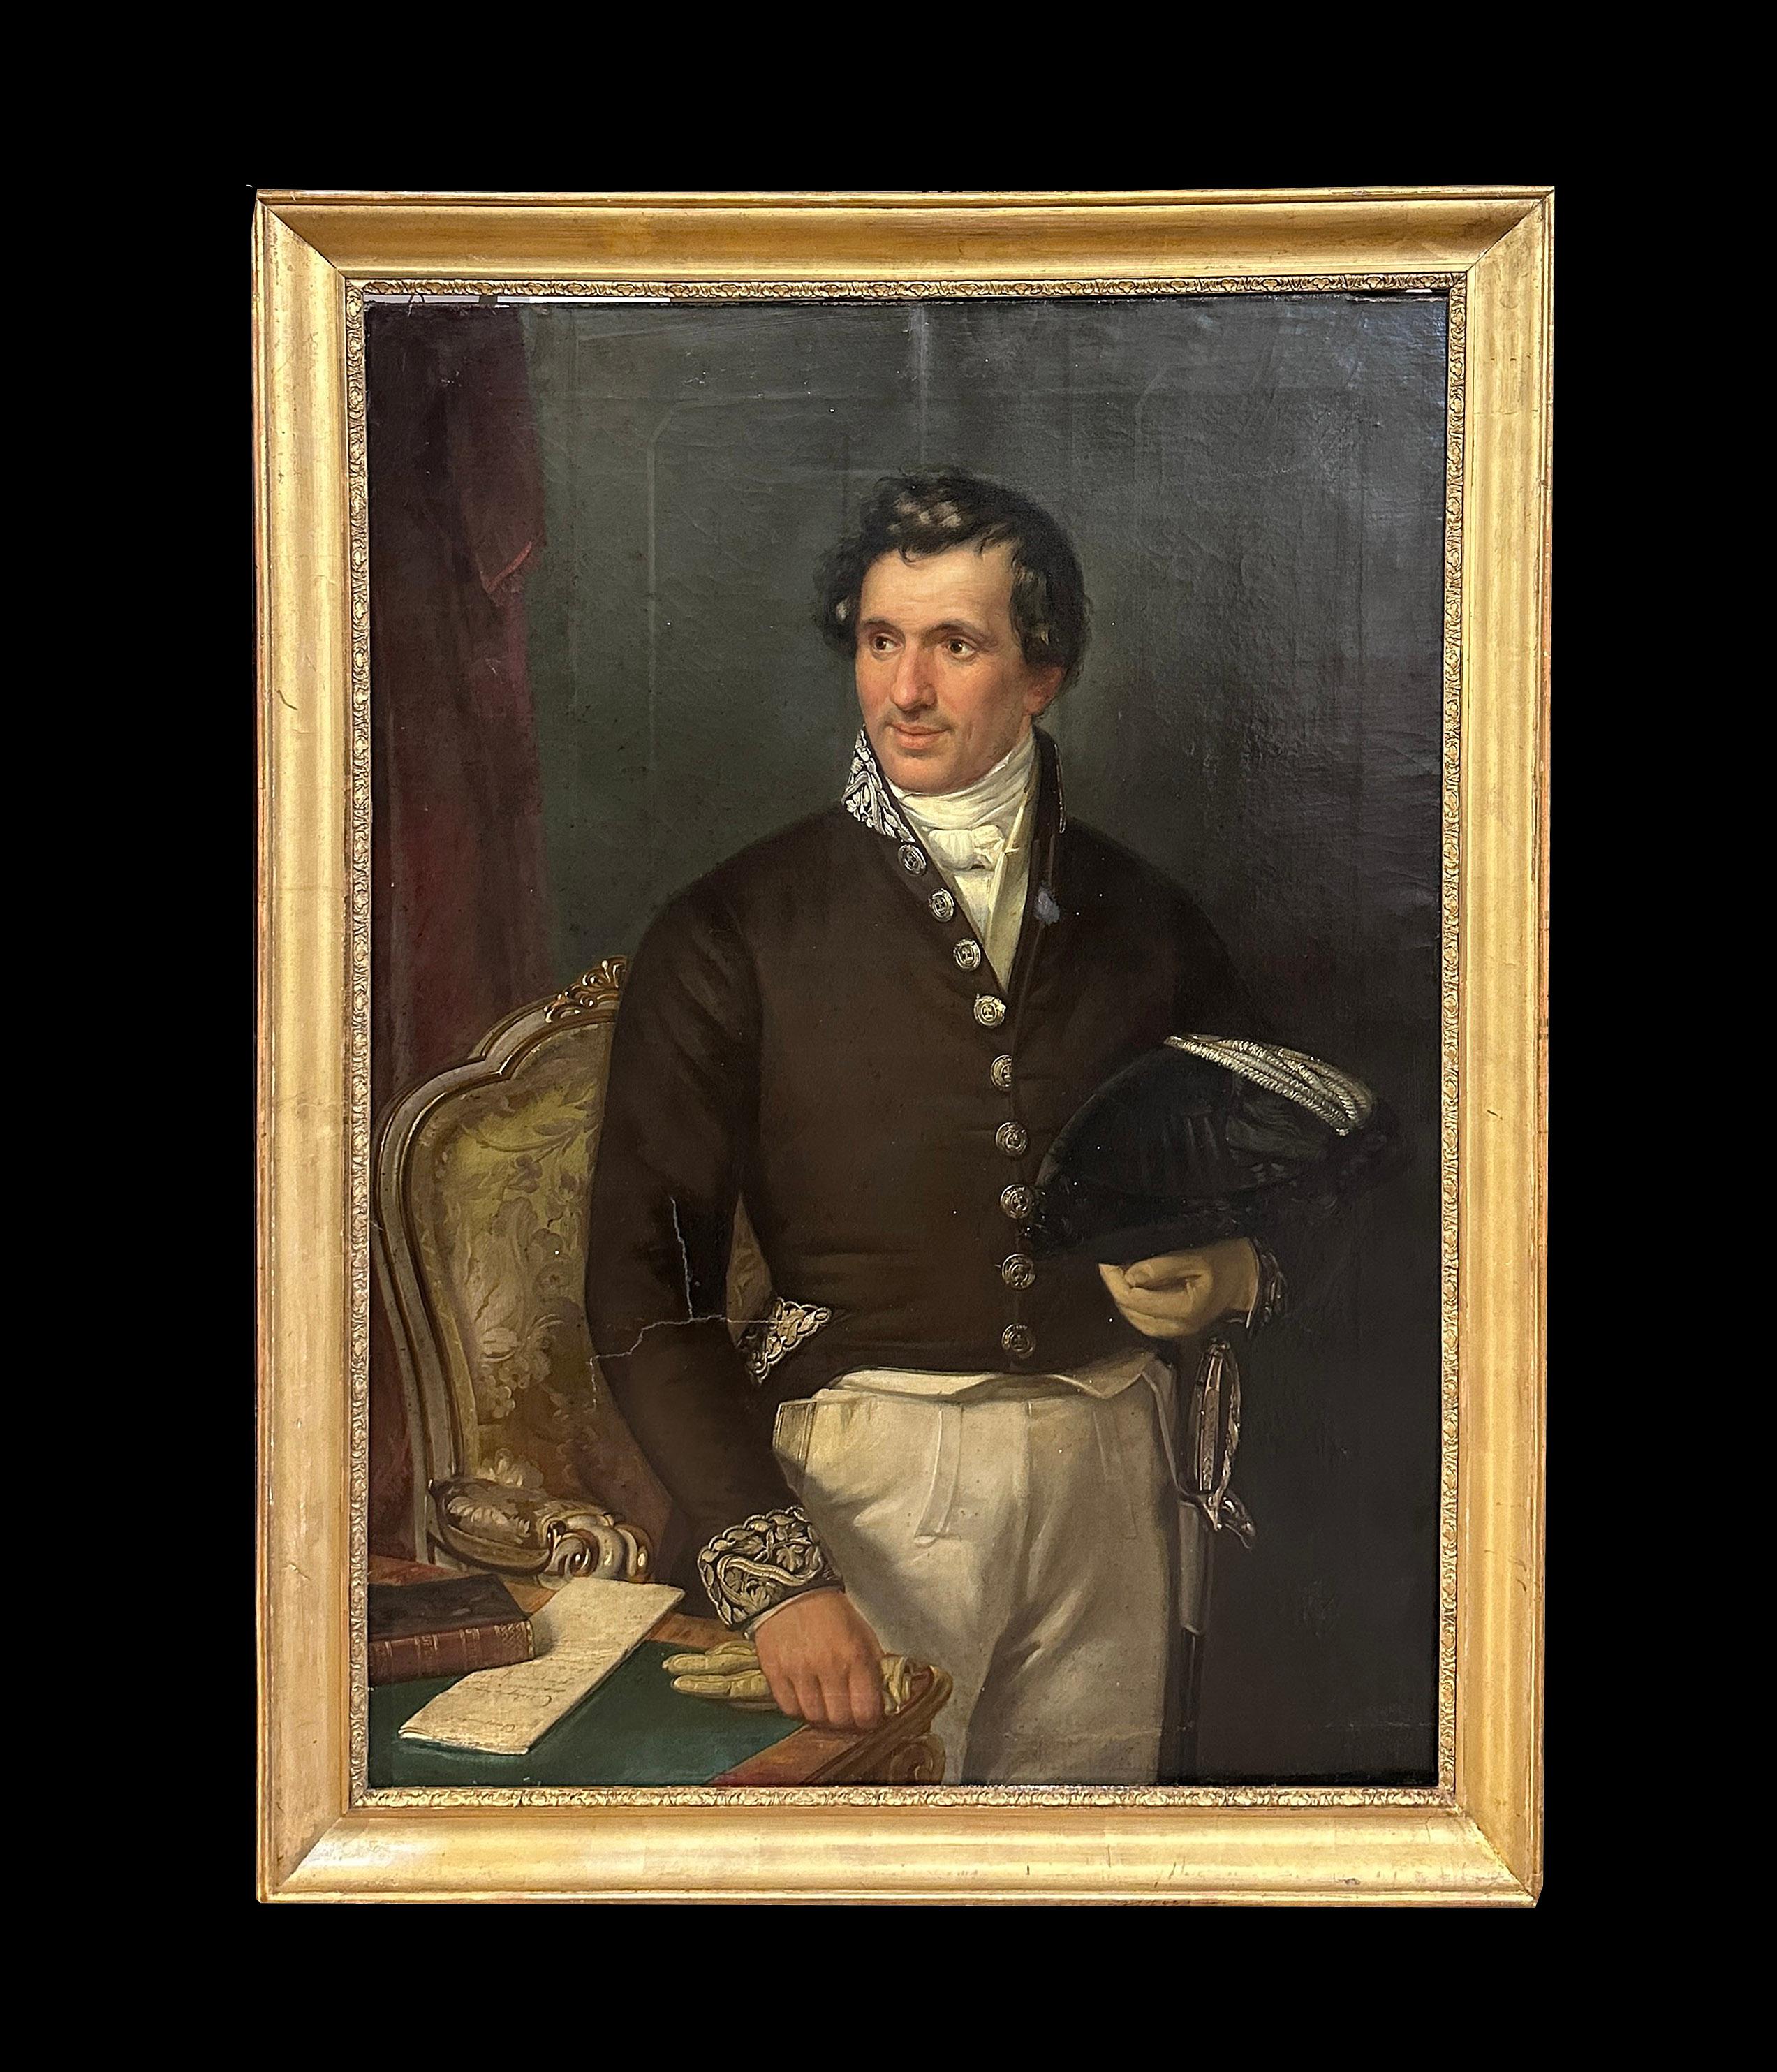 Prächtiges Ölporträt auf Leinwand eines Herrn in Uniform, identifiziert als Professor Moses Bosisio, Bürgermeister von Monza, der 1846 verstarb, wie auf einer Tafel auf der Rückseite des Gemäldes vermerkt. Die Familie Bosisio war eine der